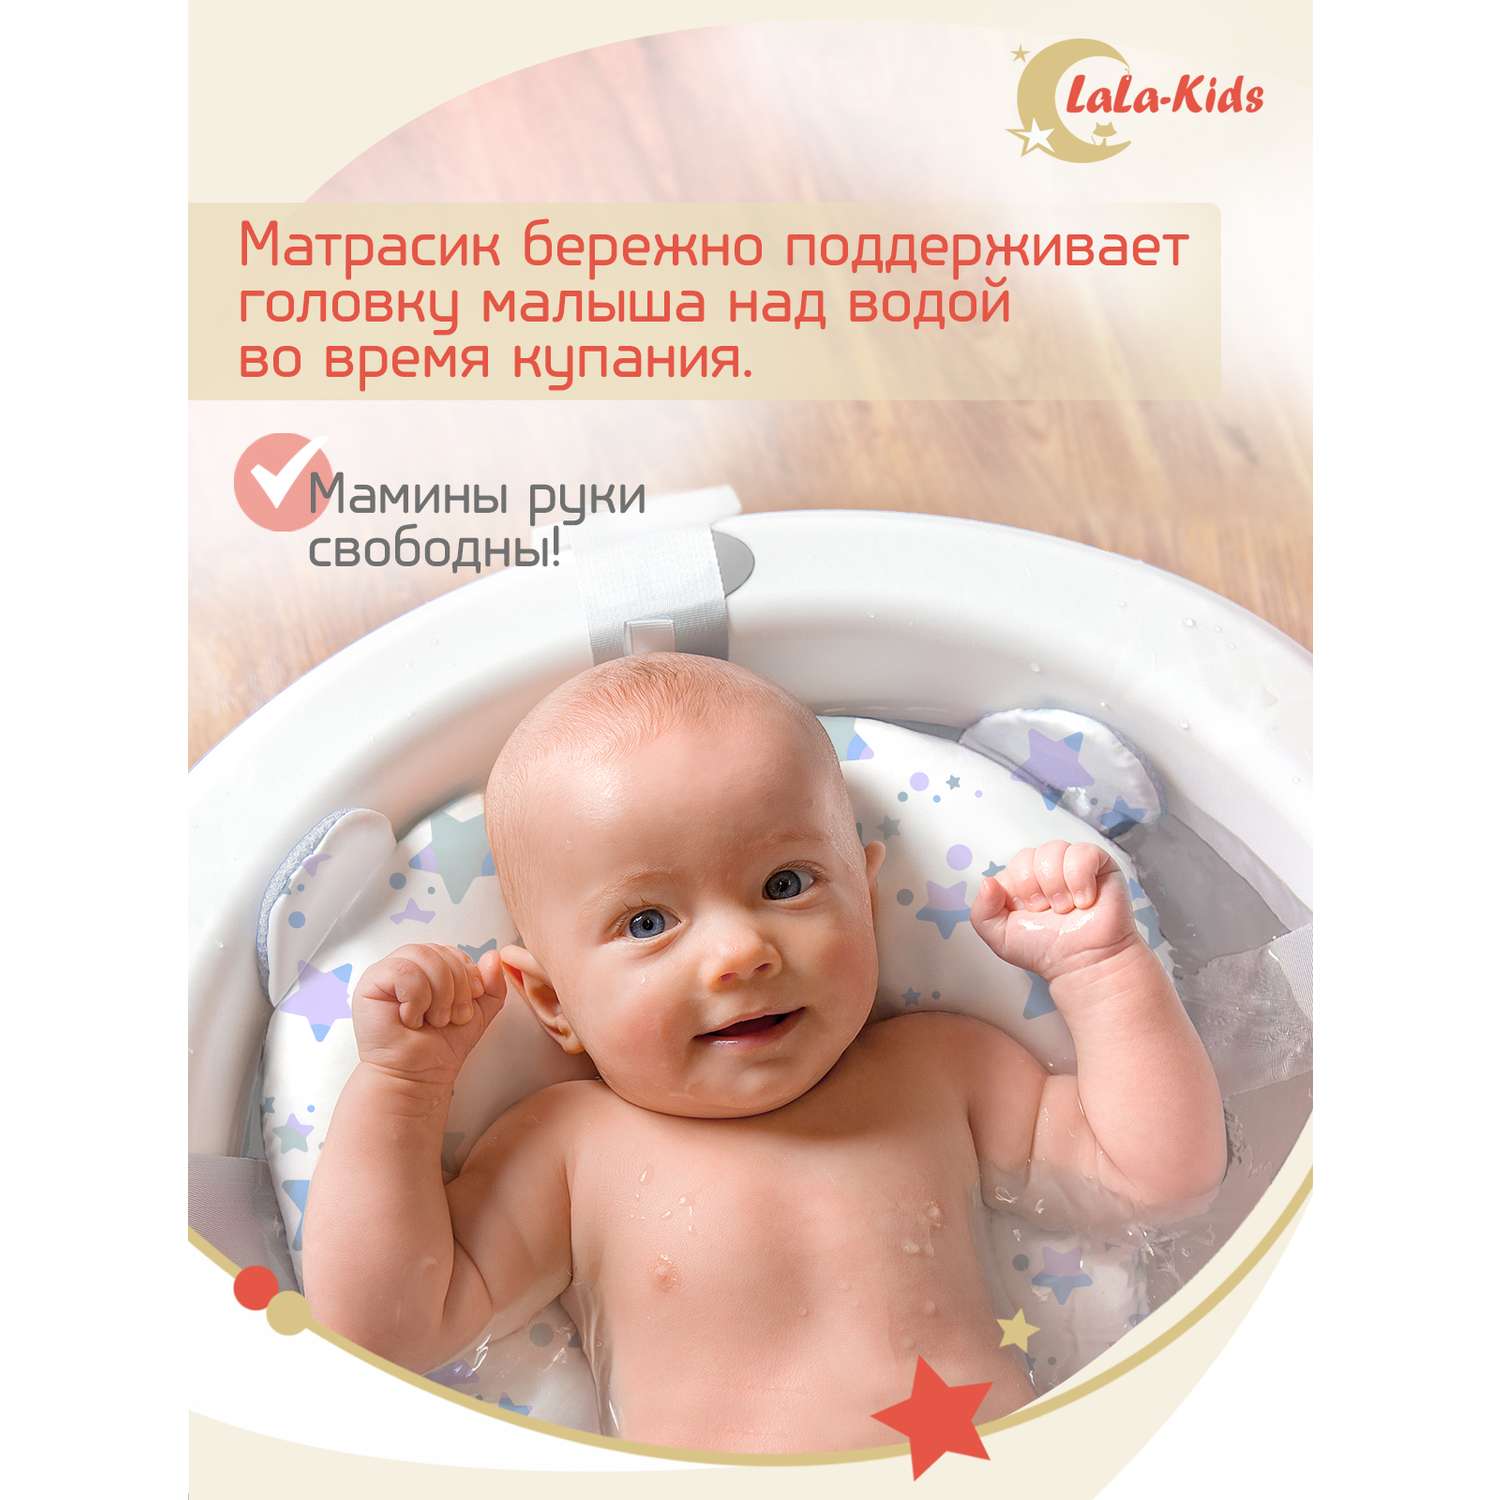 Складная ванночка LaLa-Kids для купания новорожденных с термометром и матрасиком в комплекте - фото 10